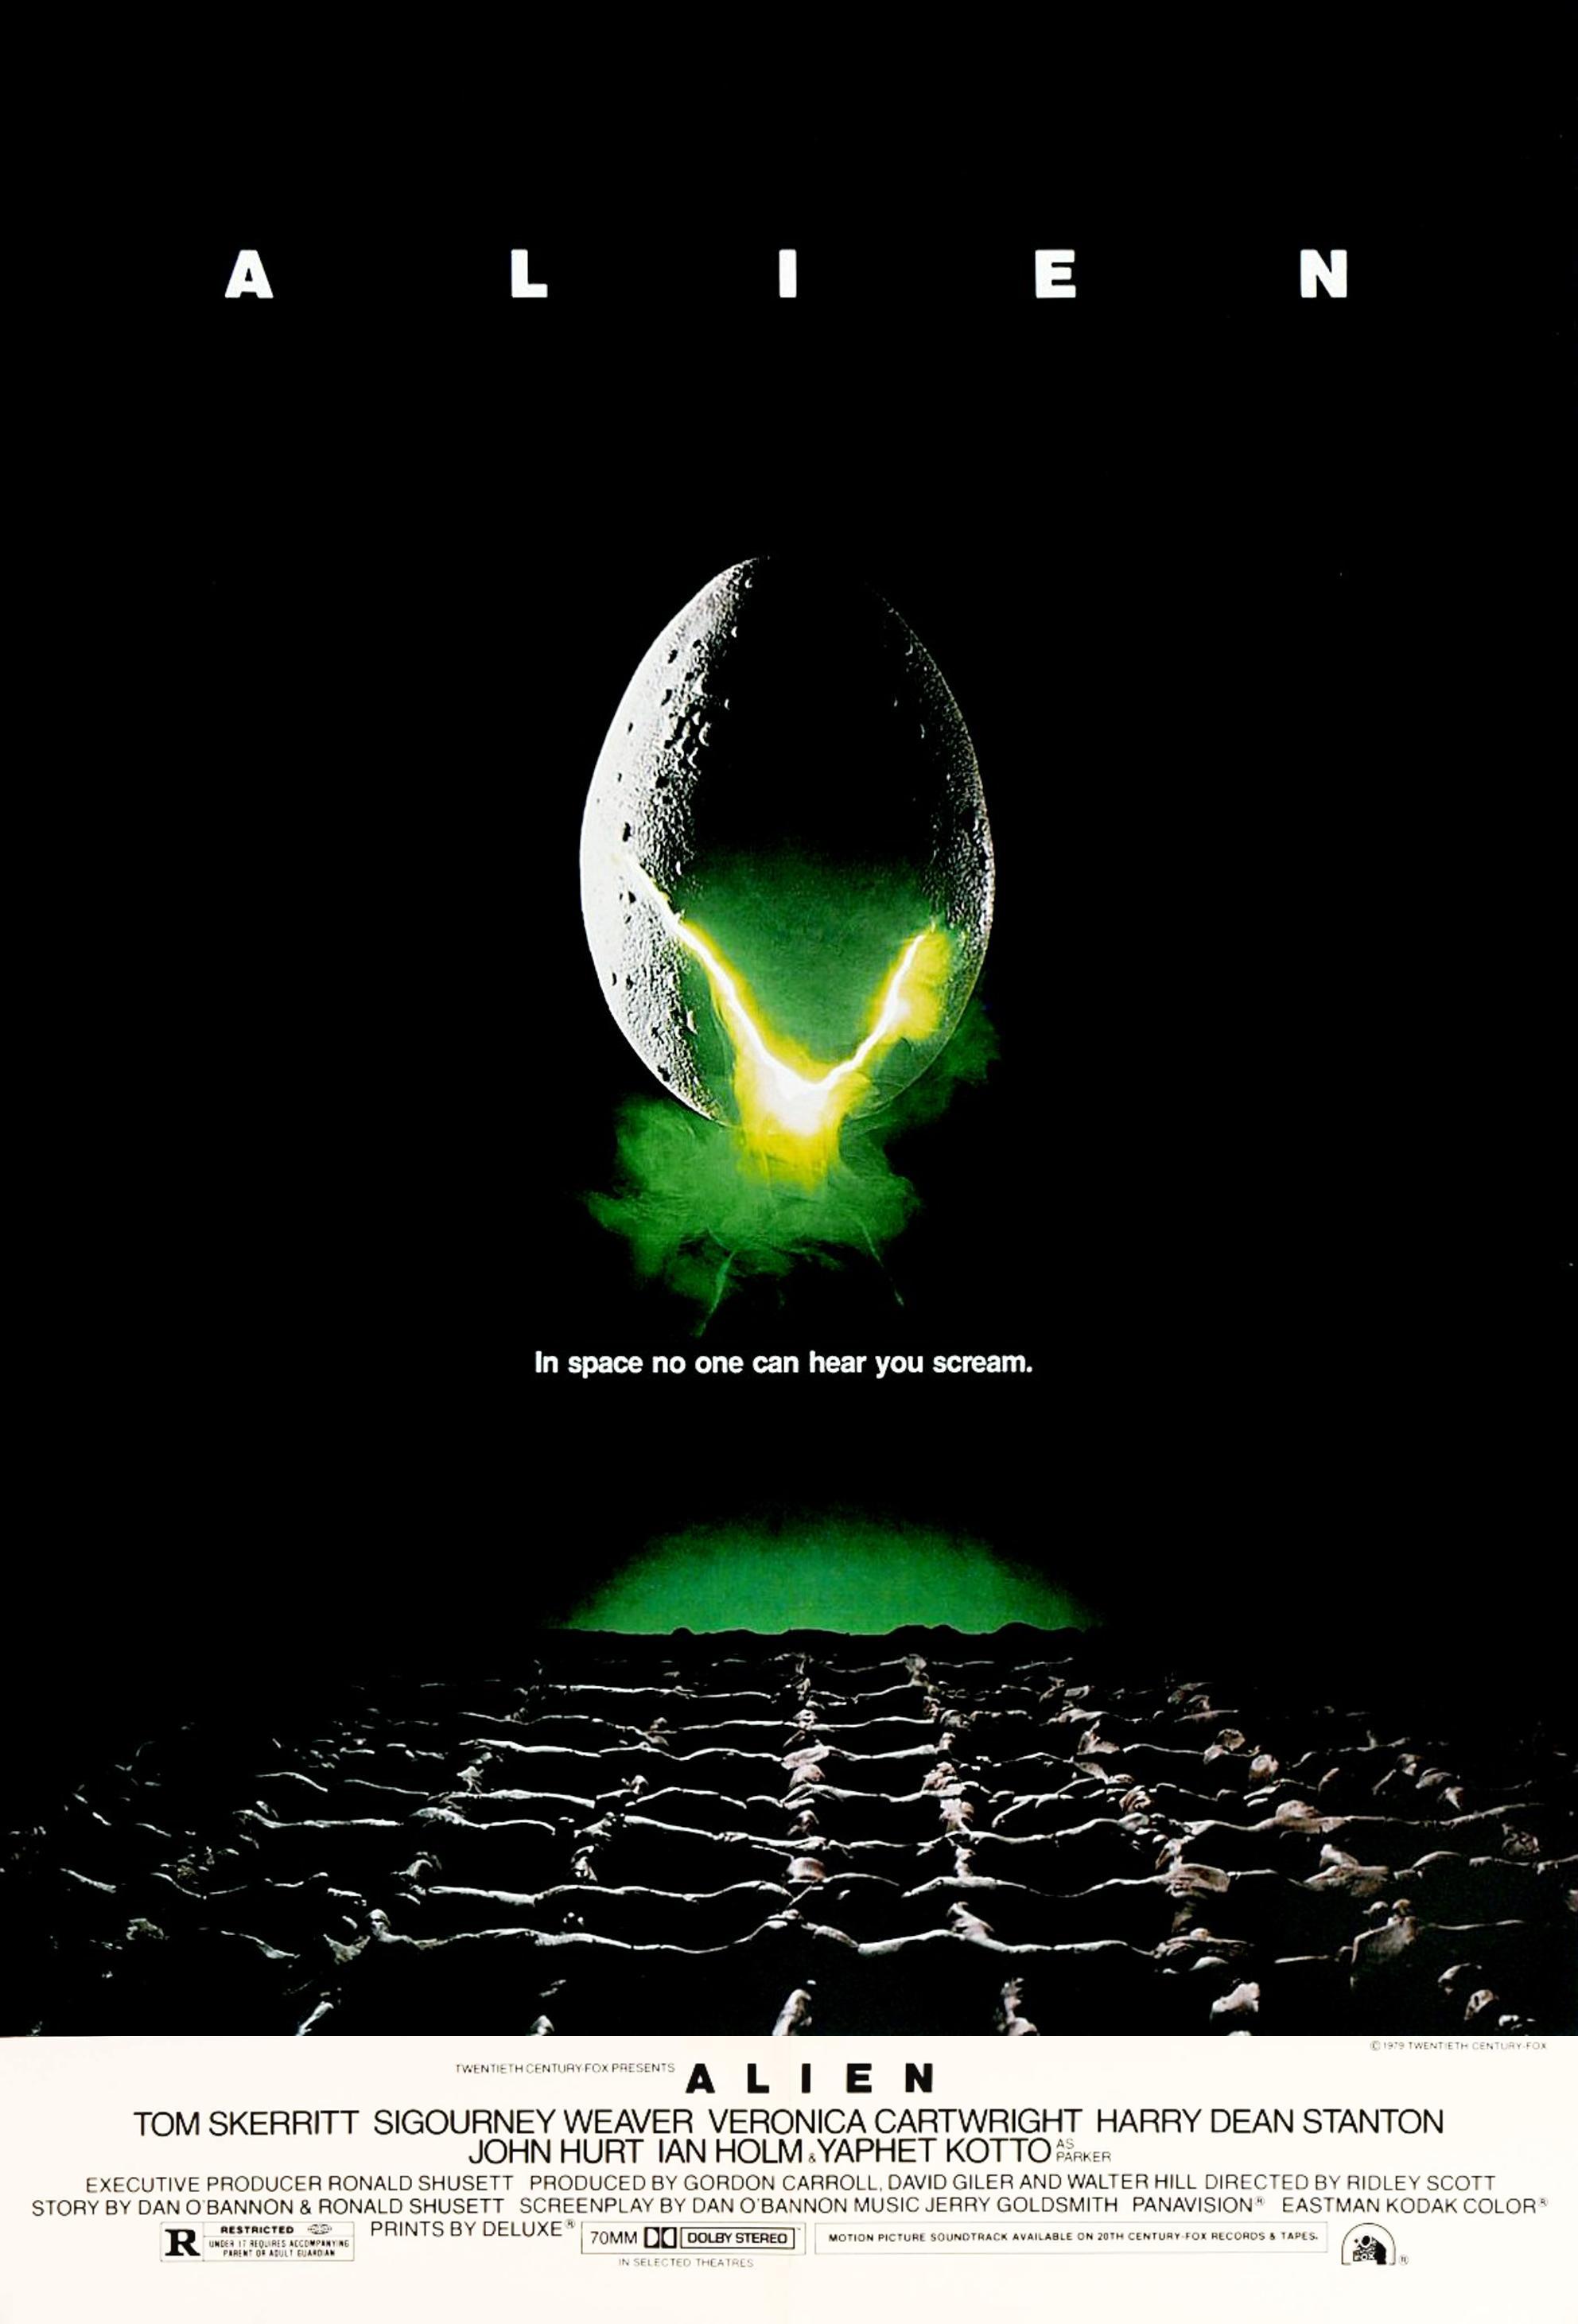 Alien 1979 Logo - Alien (1979) - IMDb